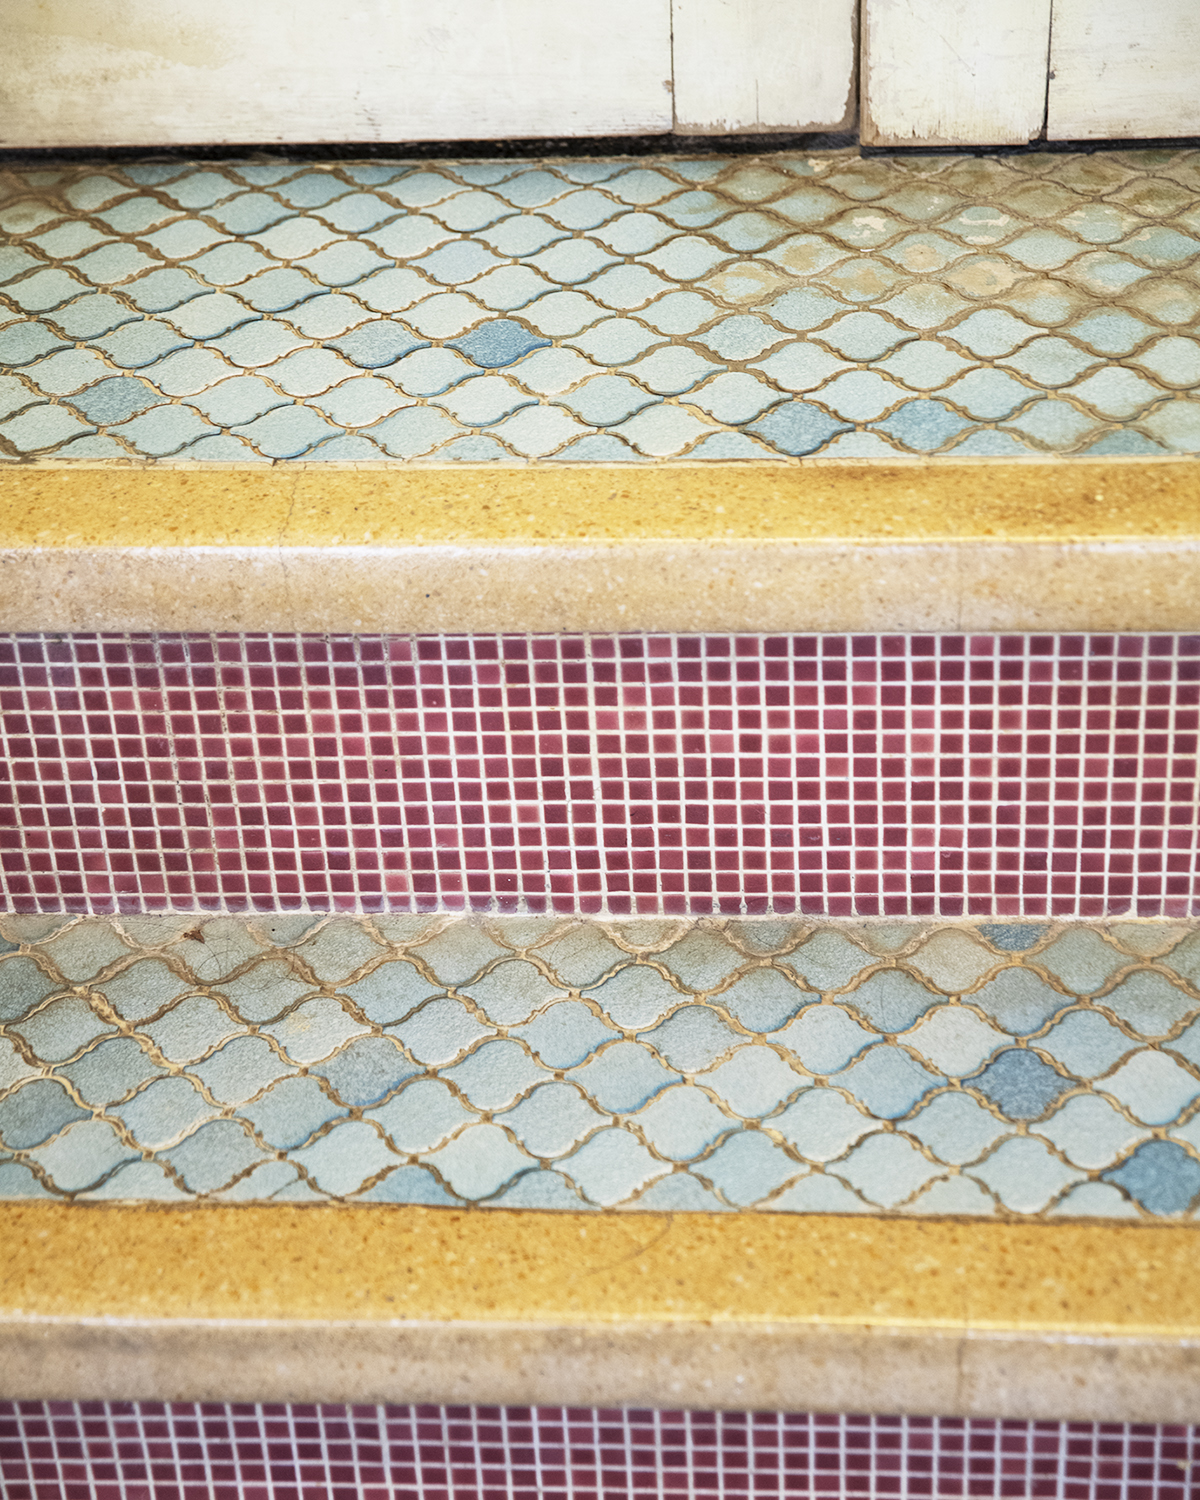 「元禄の湯」の階段部分に施された古いタイル。館内の浴場で目にするタイル細工は必見だ。